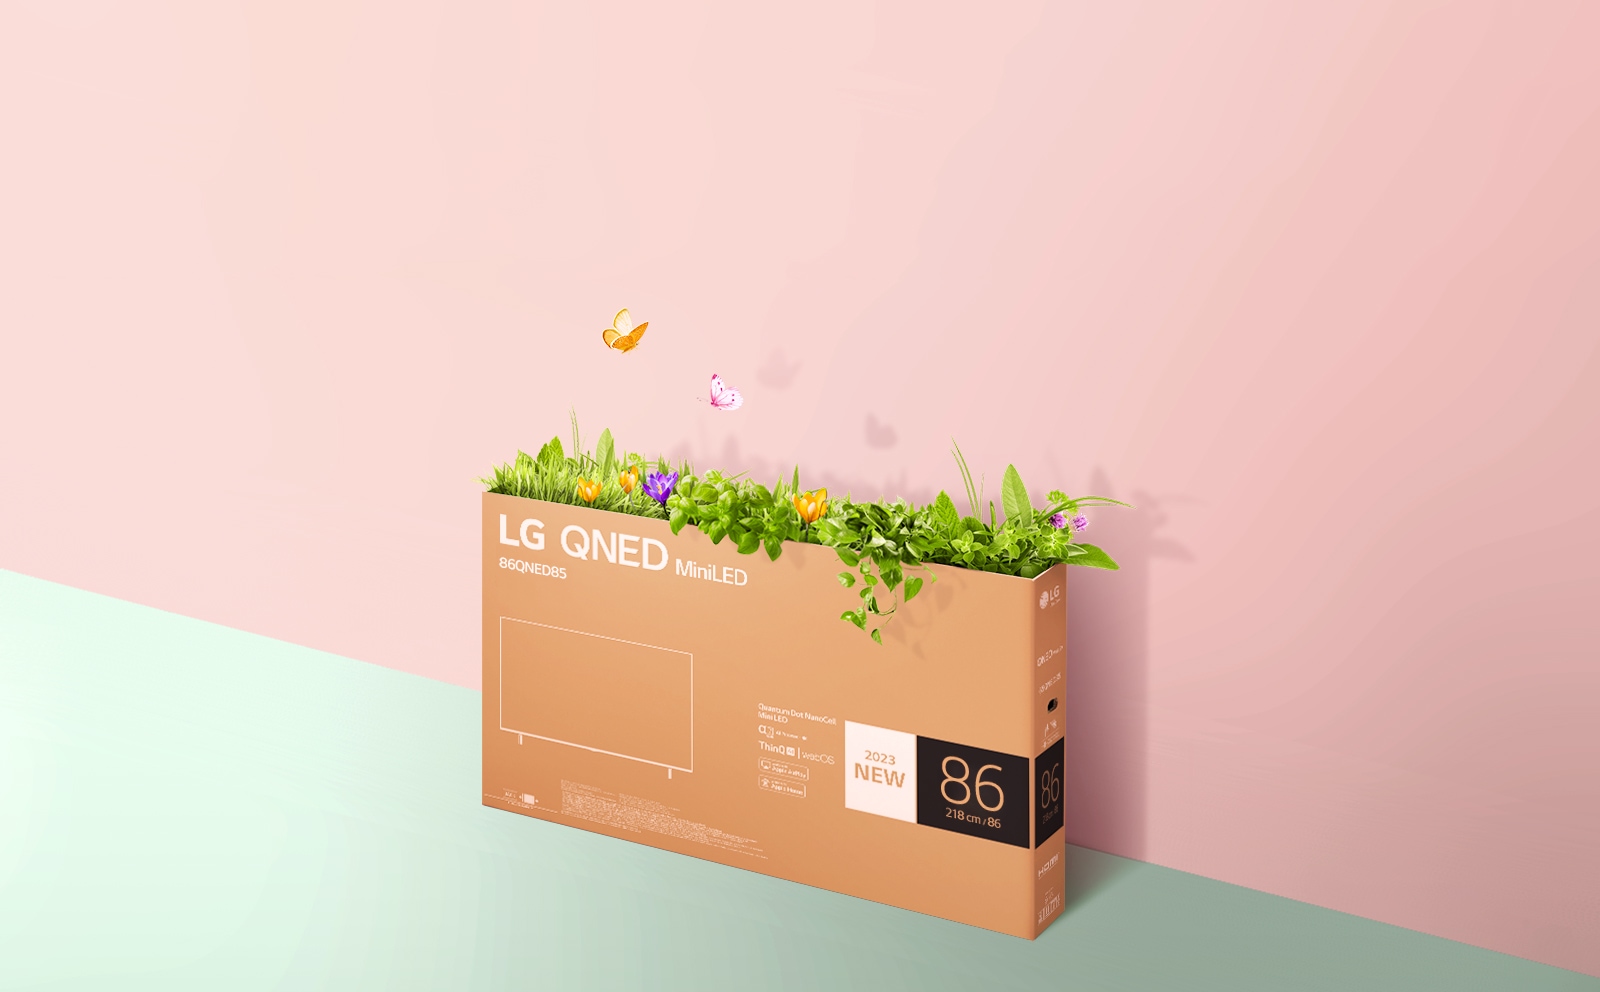 QNED iepakojuma kaste ir novietota uz rozā, zaļa fona, un no tās uz āru aug zāle un lido ārā tauriņi. 